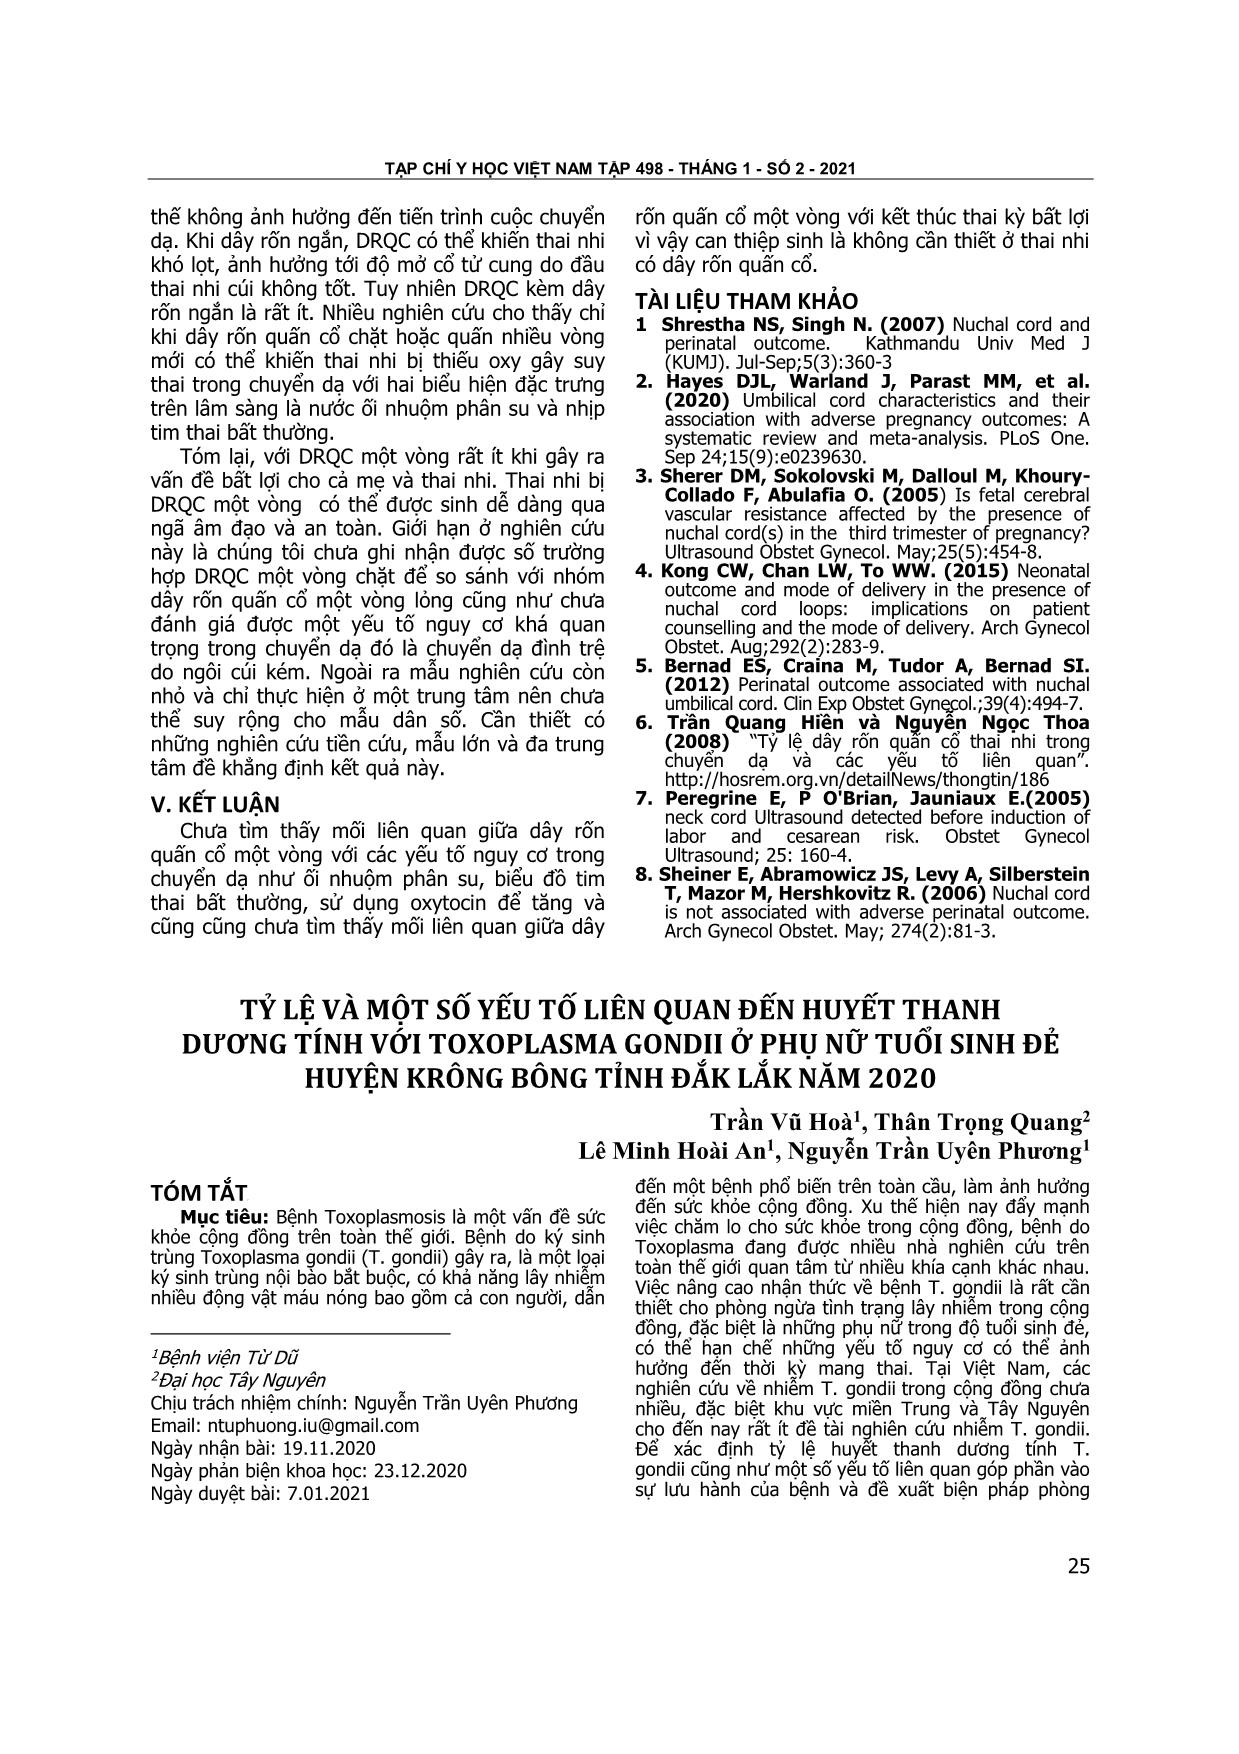 Tỷ lệ và một số yếu tố liên quan đến huyết thanh dương tính với Toxoplasma Gondii ở phụ nữ tuổi sinh đẻ huyện Krông Bông tỉnh Đắk Lắk năm 2020 trang 1